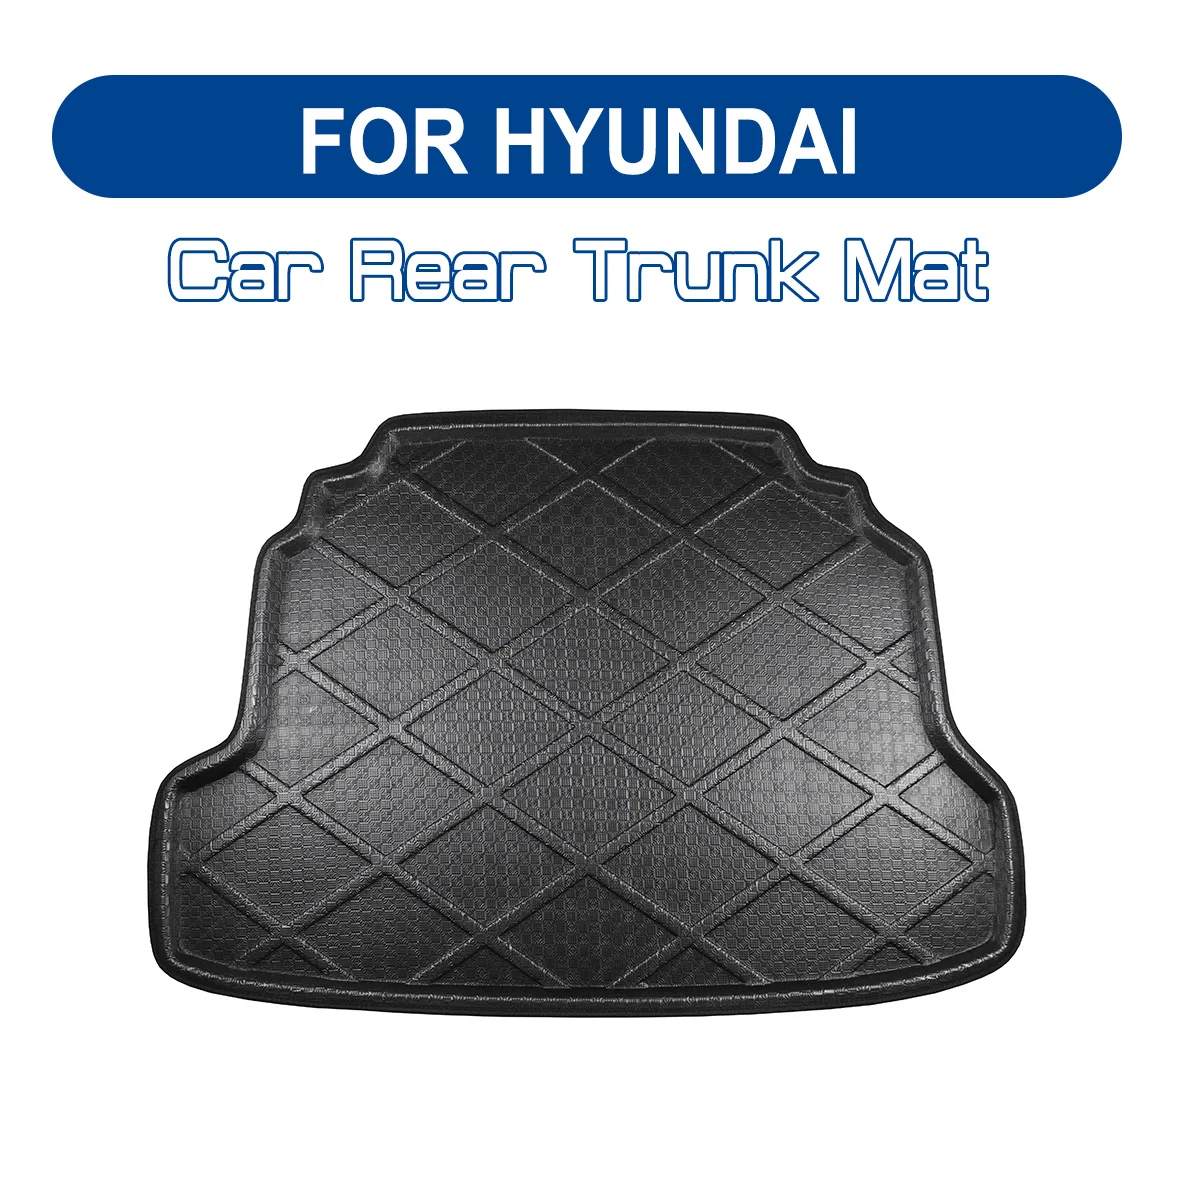 

Коврик для багажника автомобиля для Hyundai TUCSON Sonata Genesis IX25 IX35 IX45 SANTAFE ELANTRA Verna, водонепроницаемый коврик для груза